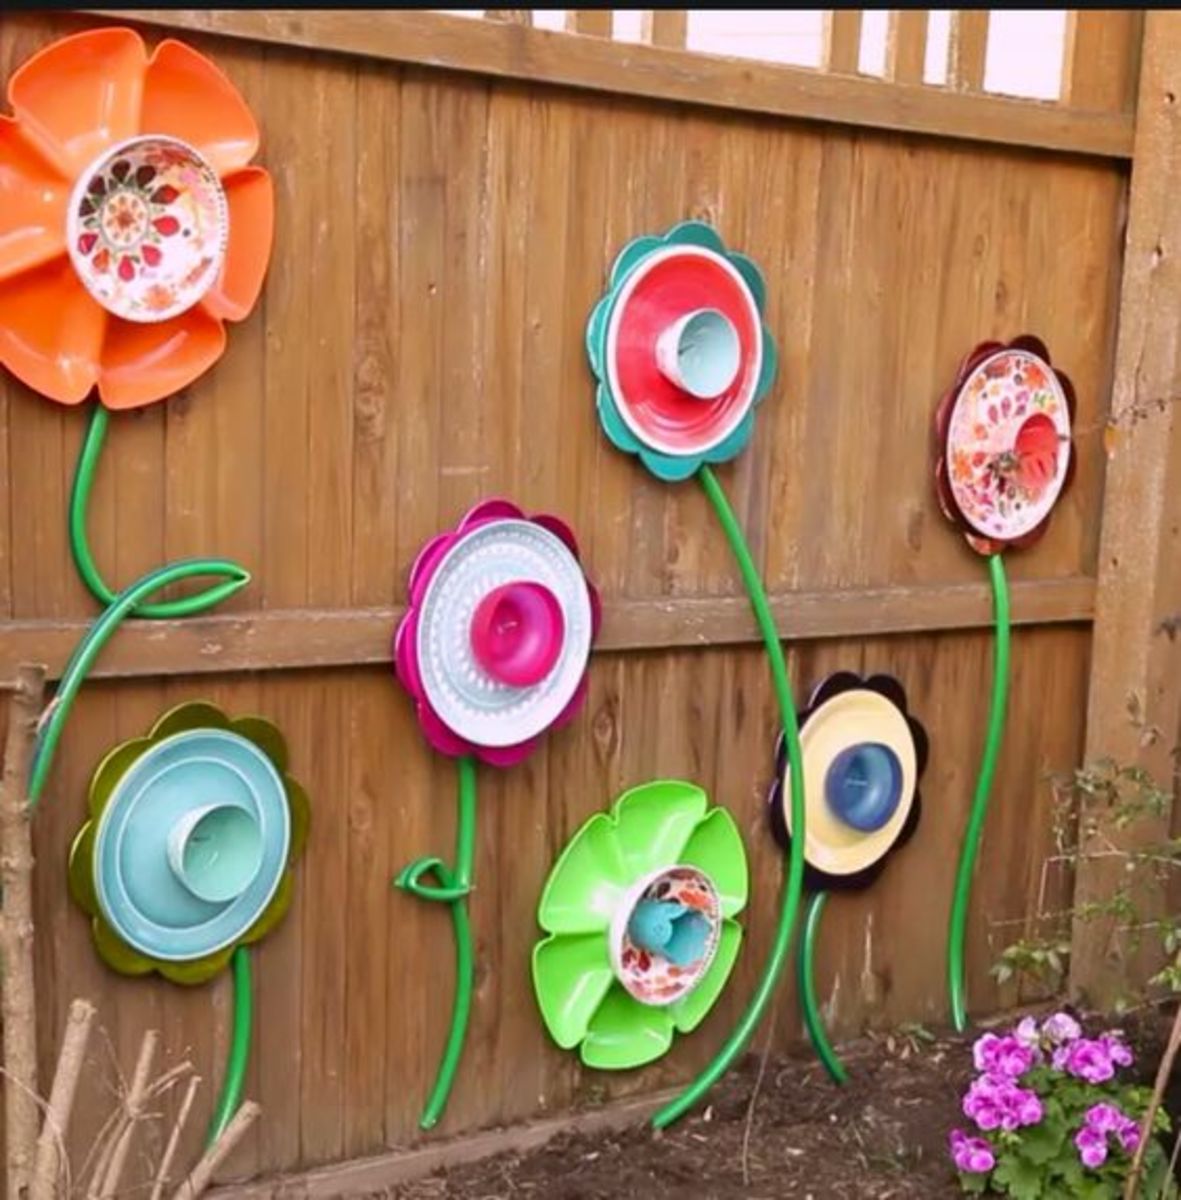 30 DIY Fall Yard Decor Ideas - Prudent Penny Pincher